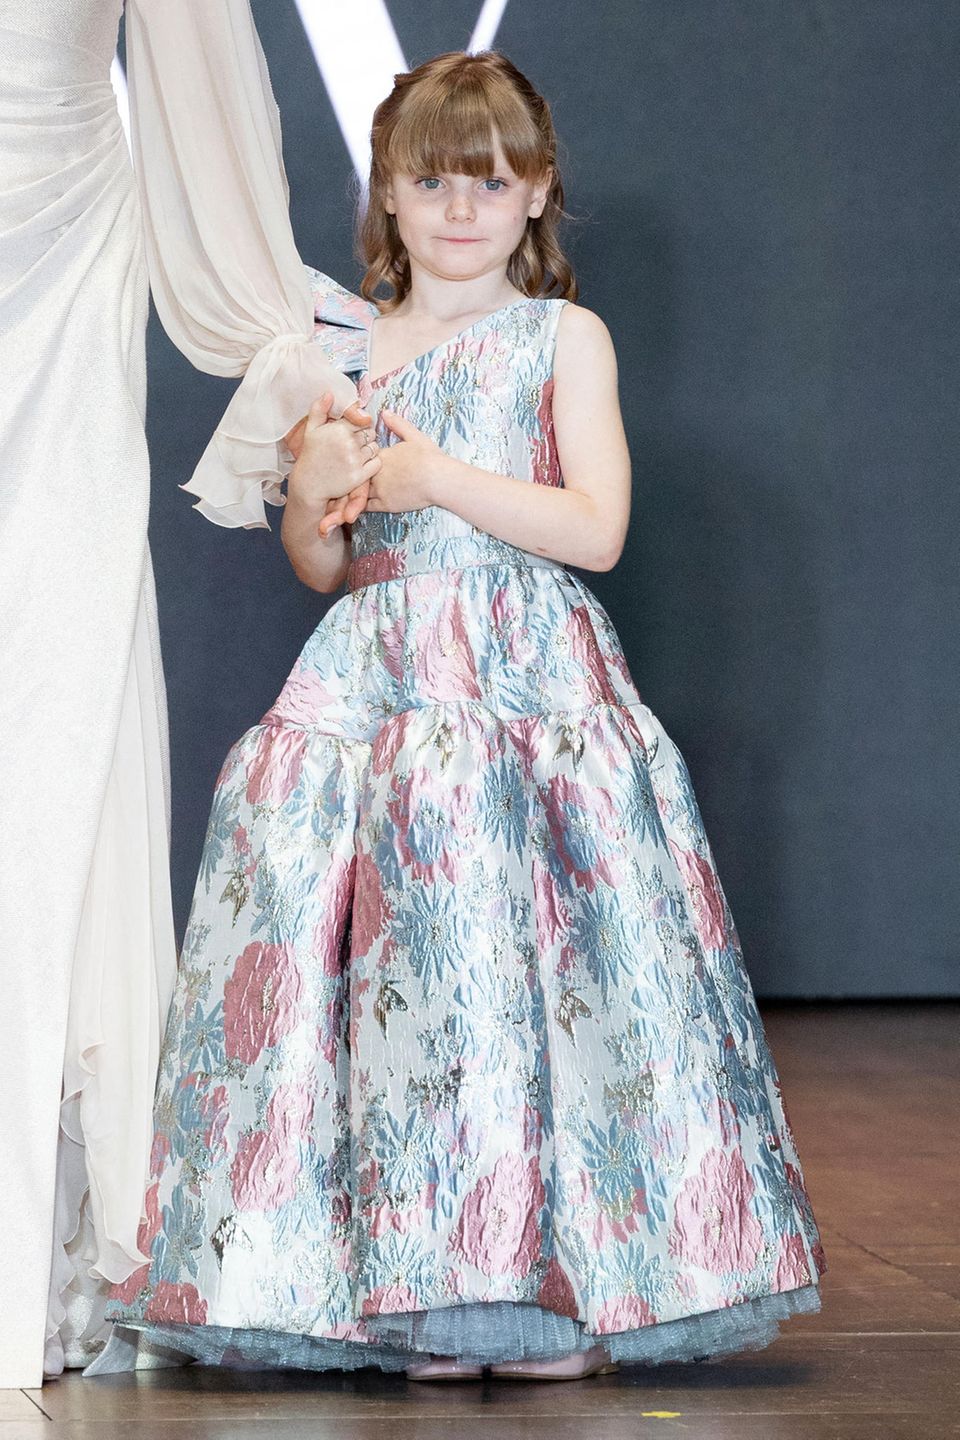 Bis heute gilt ihre Großmutter Fürstin Gracia Patricia als eine der größten Stilikonen. Und auch Prinzessin Gabriella scheint ein Gespür für stylische Outfits zu haben. Vor allem Prinzessinnenkleider haben es der 7-Jährigen angetan zu haben. In einem schimmernden Kleid mit blauen und rosanen Blumen-Applikationen meistert der royale Nachwuchs ihr Bühnen-Debüt mit Bravour.